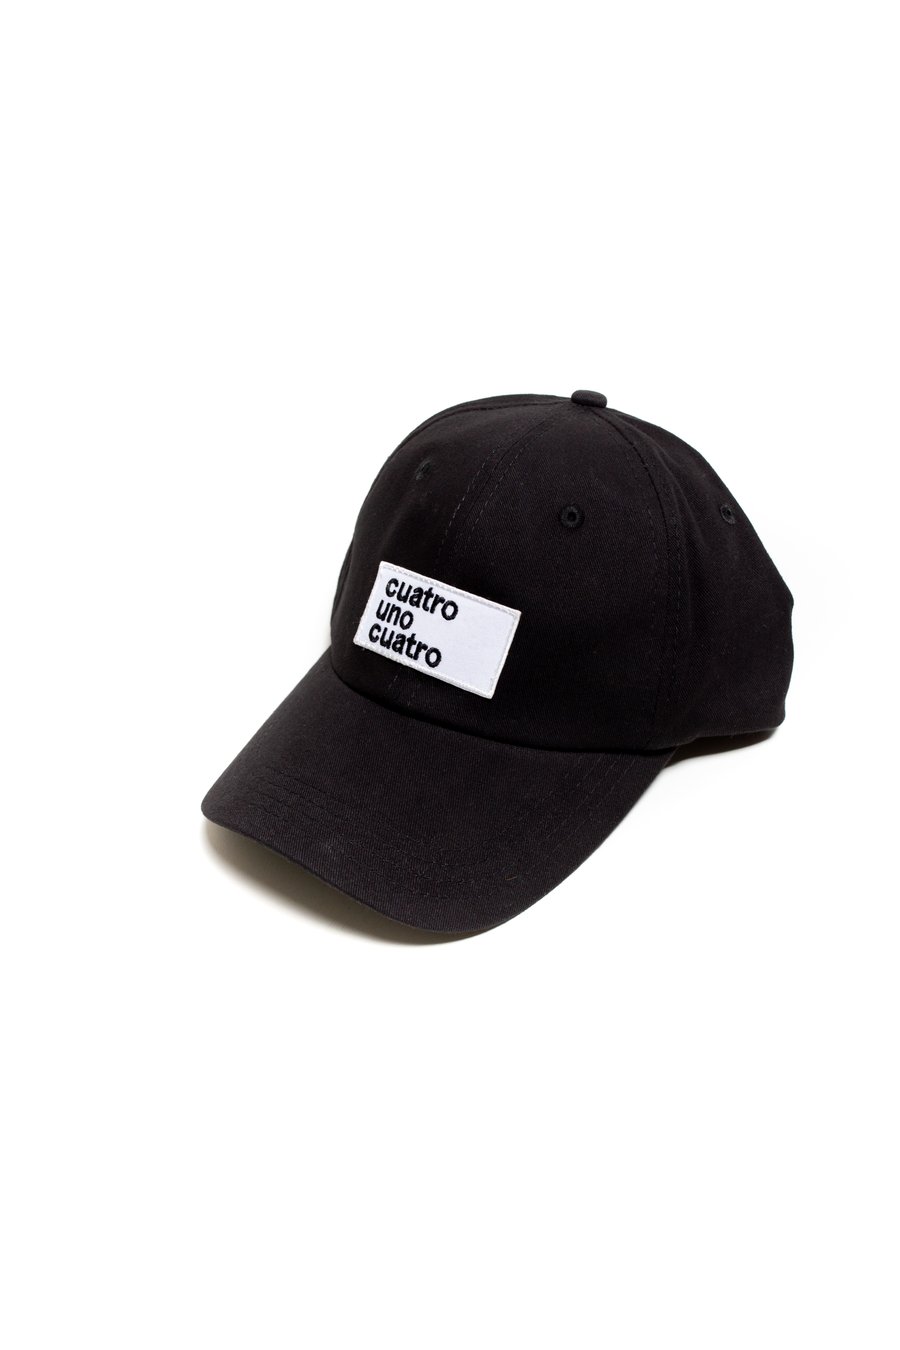 Image of BLACK CAP 